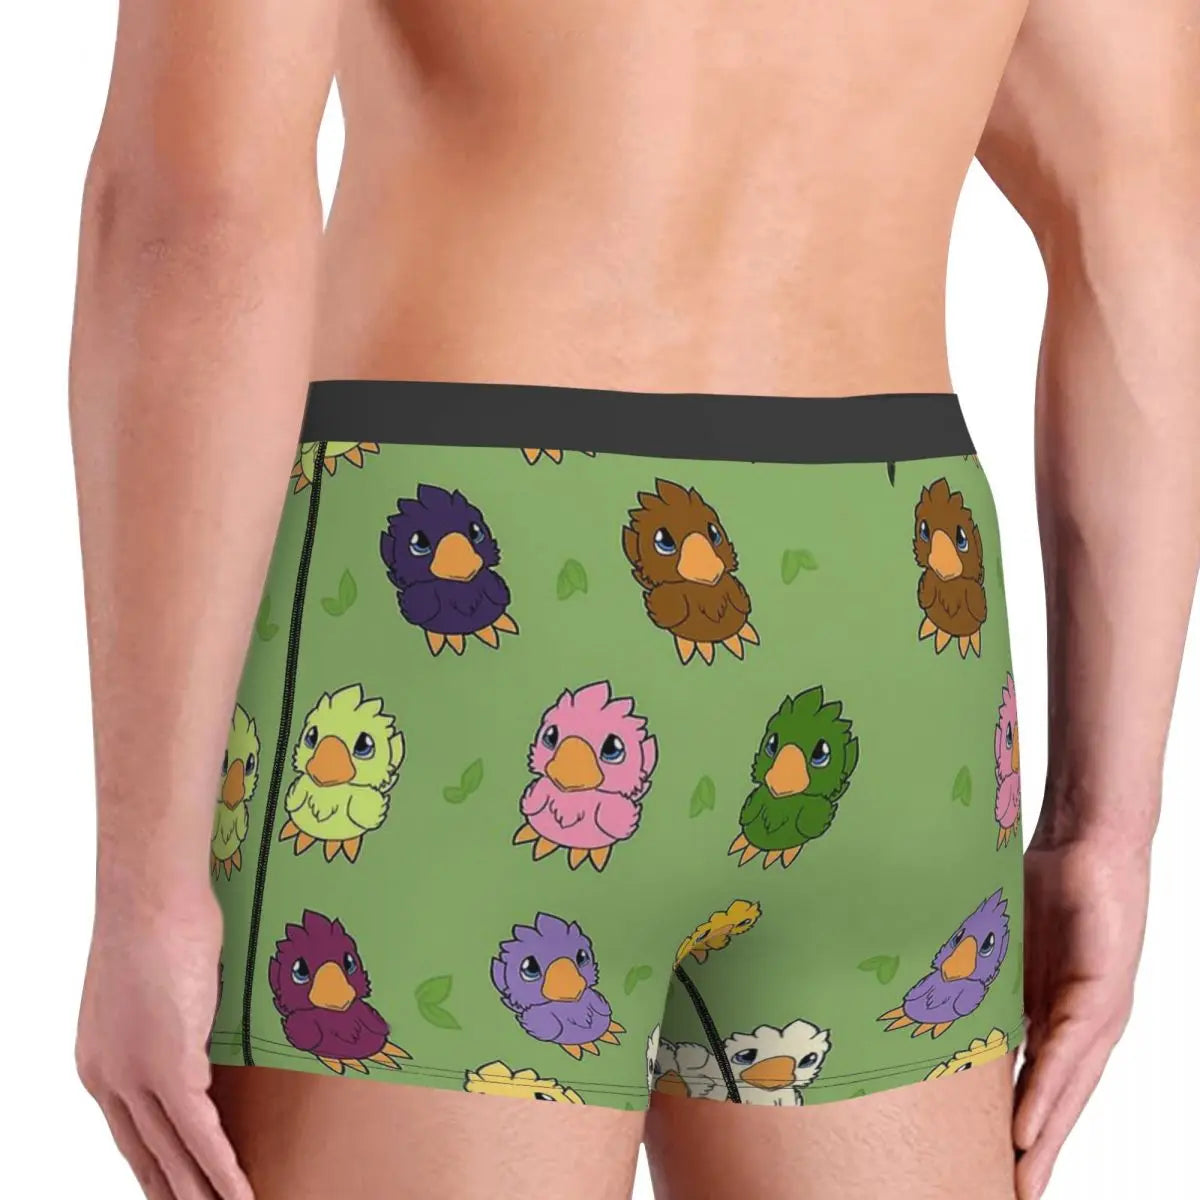 Fantasy Chicken Parade Chibi Mini calzoncillos para hombre, ropa interior para hombre, pantalones cortos sexis, calzoncillos tipo bóxer